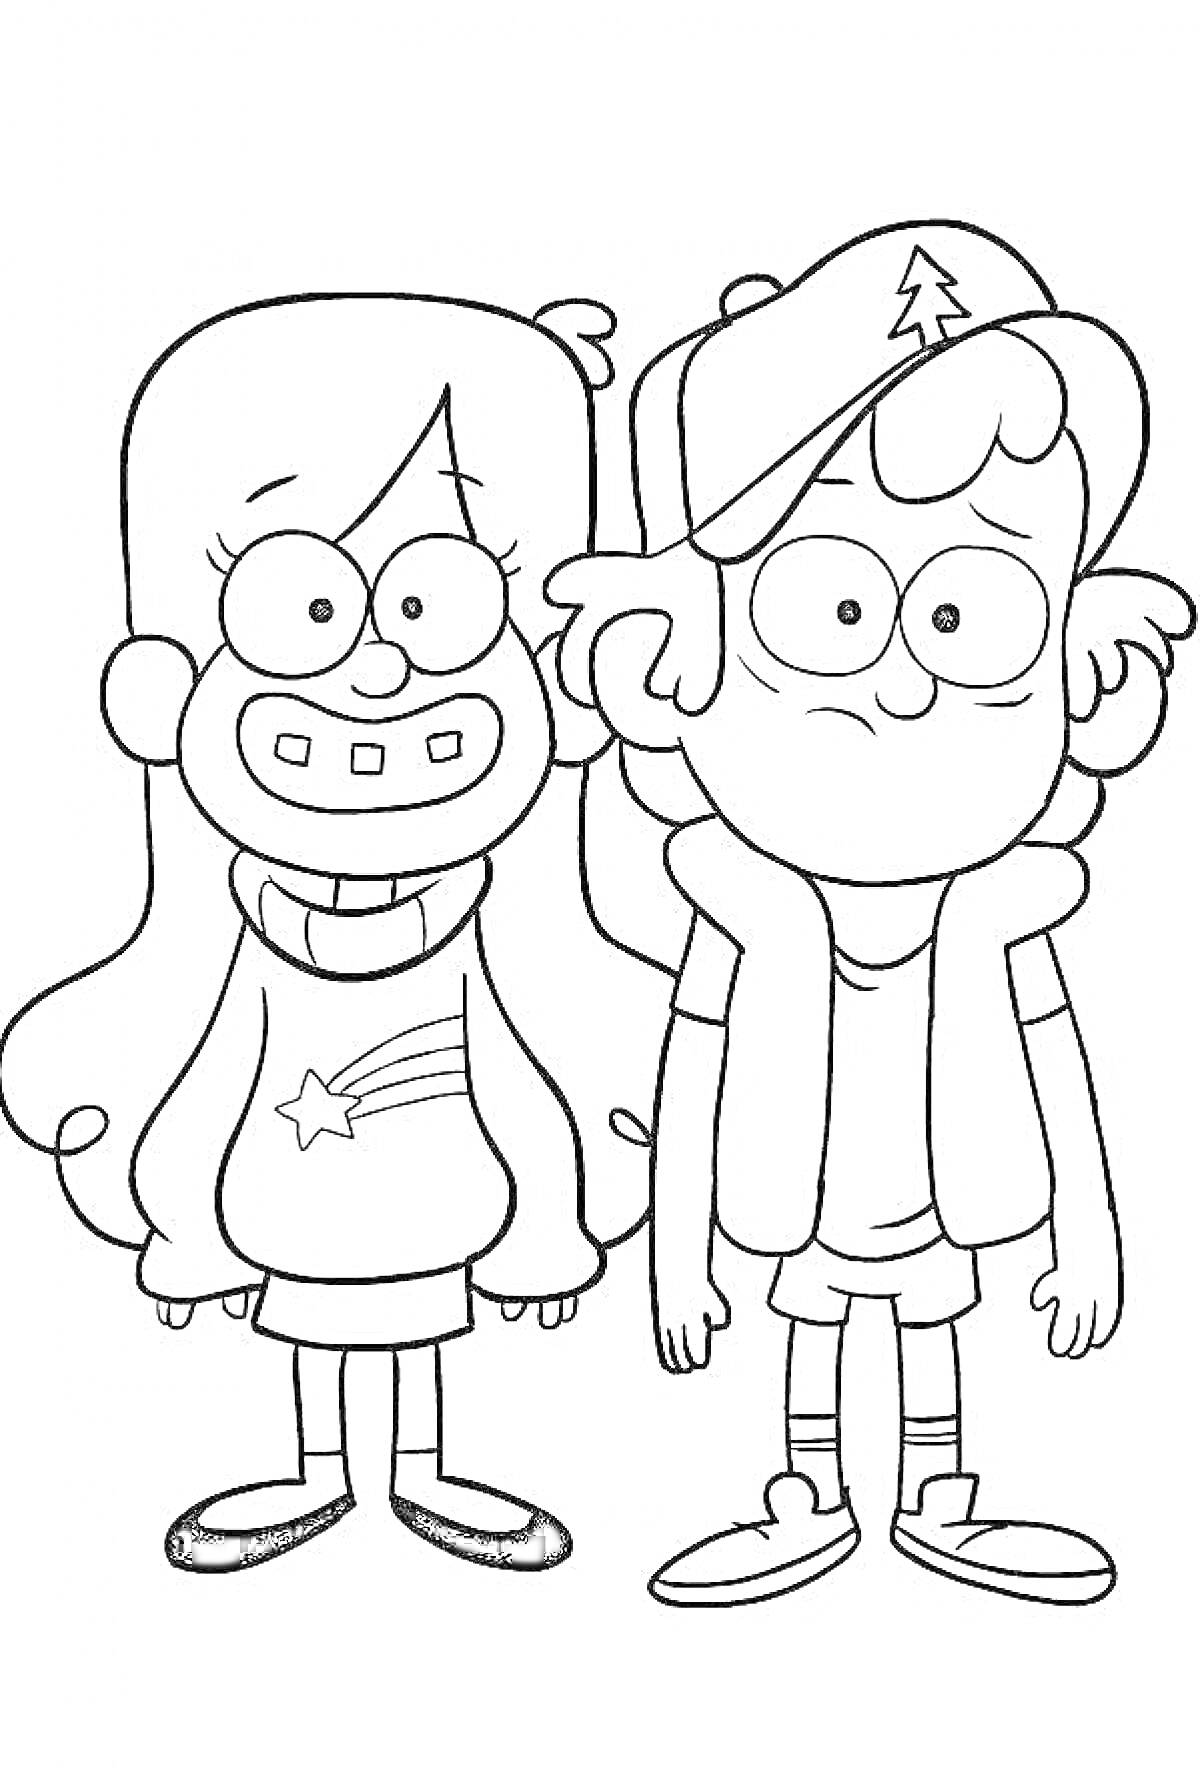 РаскраскаДвое персонажей: мальчик и девочка с длинными волосами и очками, мальчик в кепке с елочкой